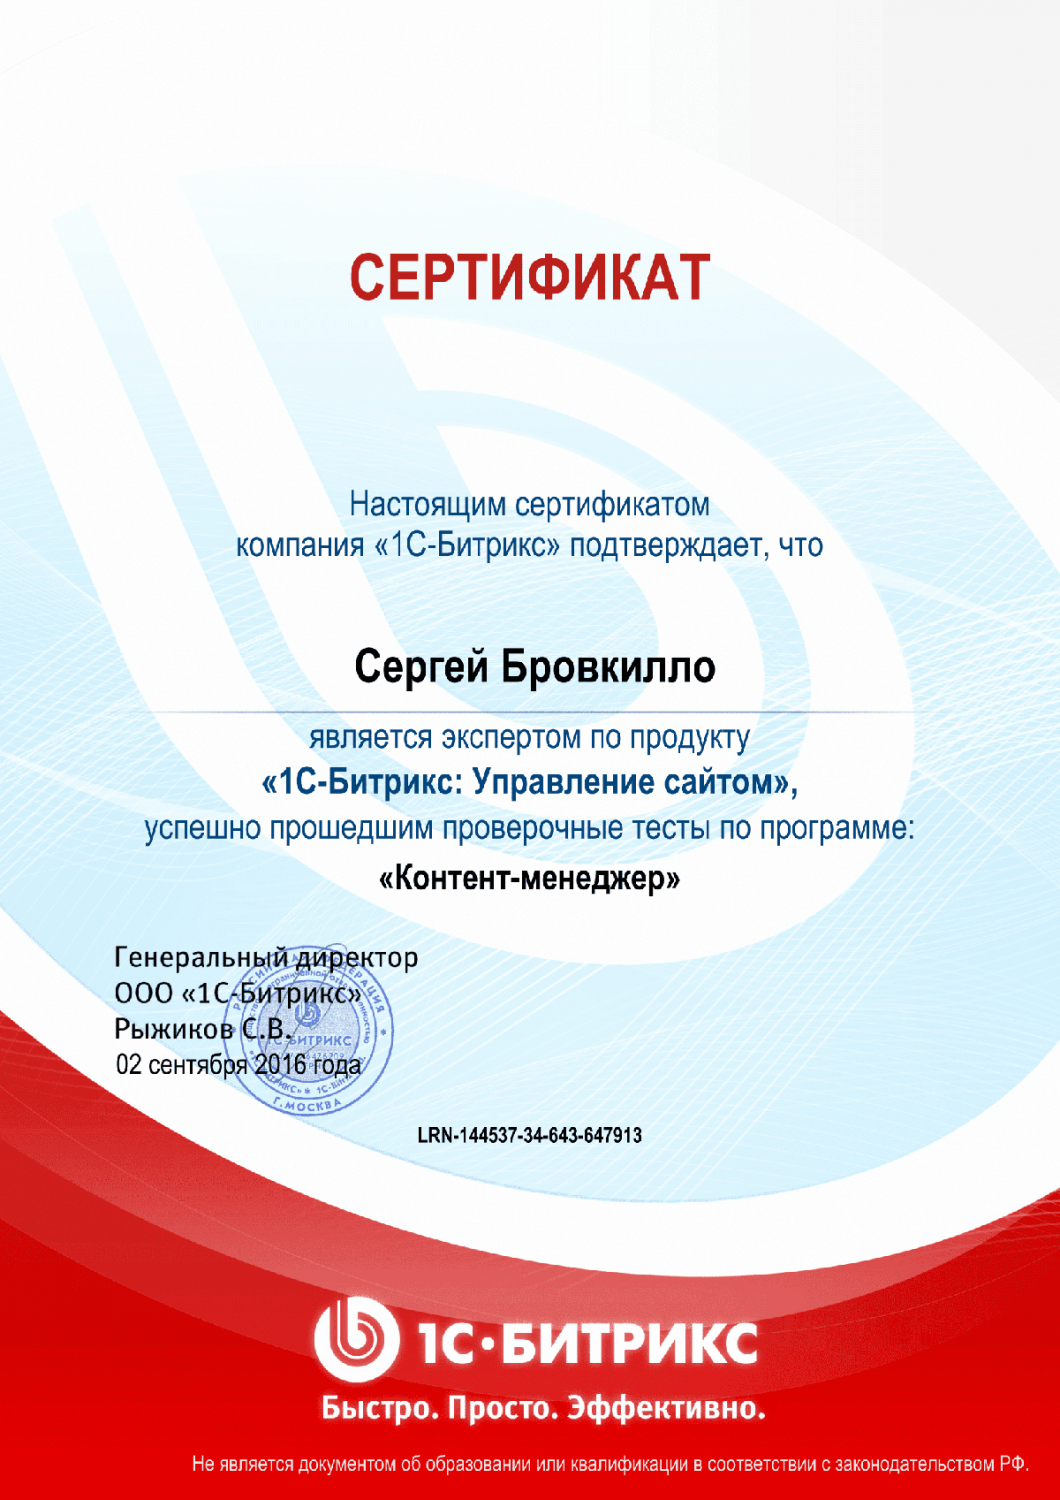 Сертификат эксперта по программе "Контент-менеджер"" в Грозного